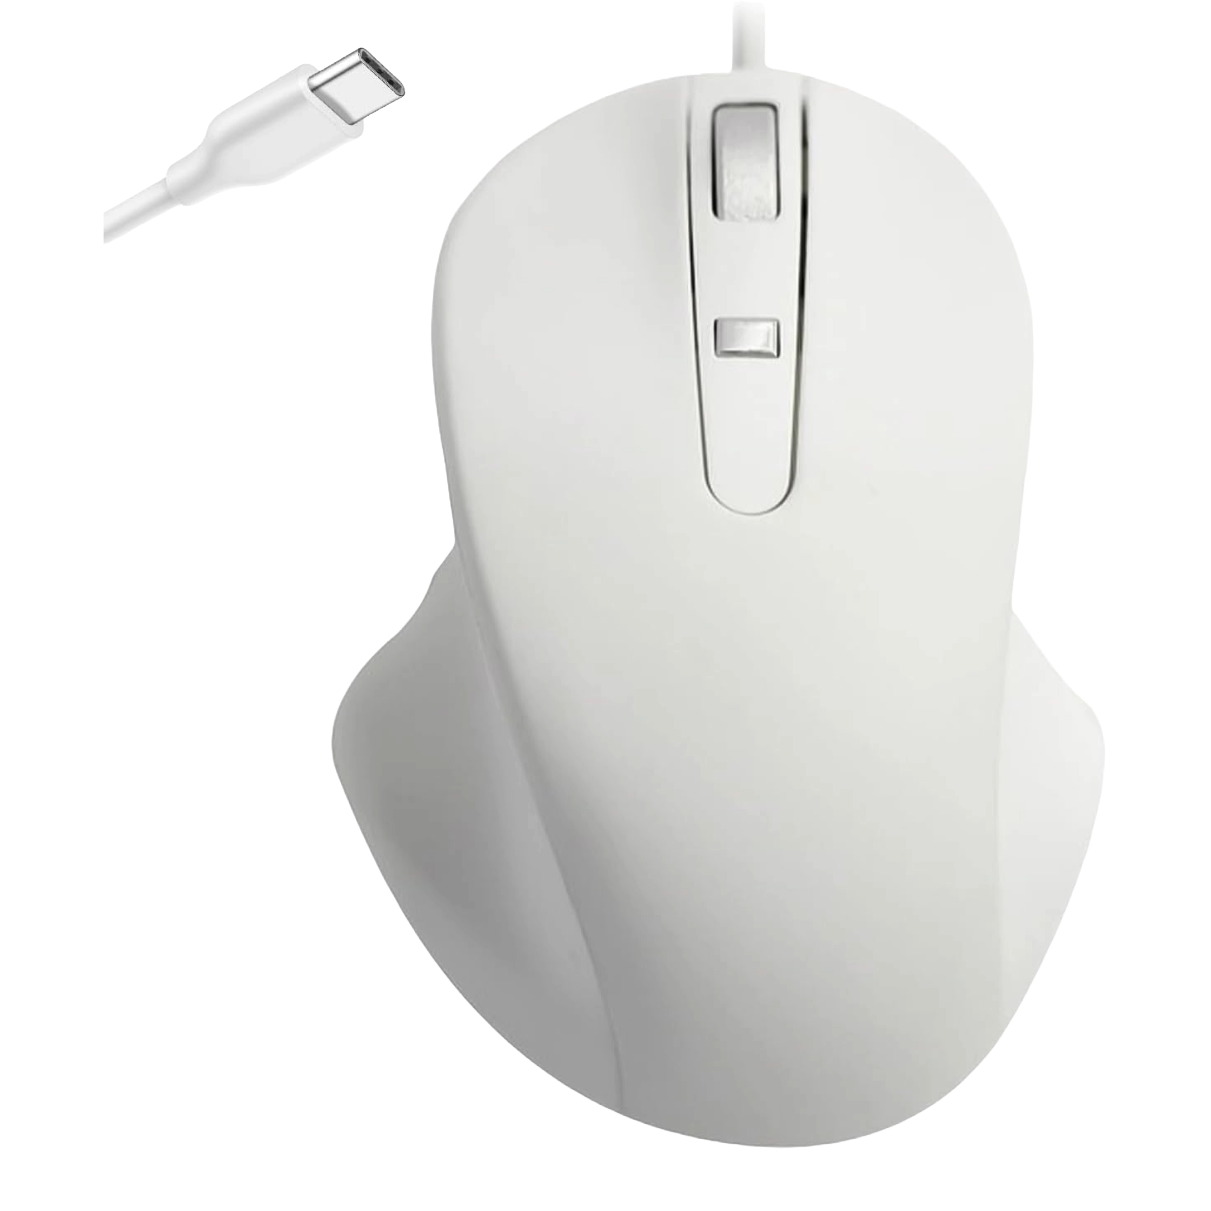 Matias Premium USB-C Mouse on a transparent background.